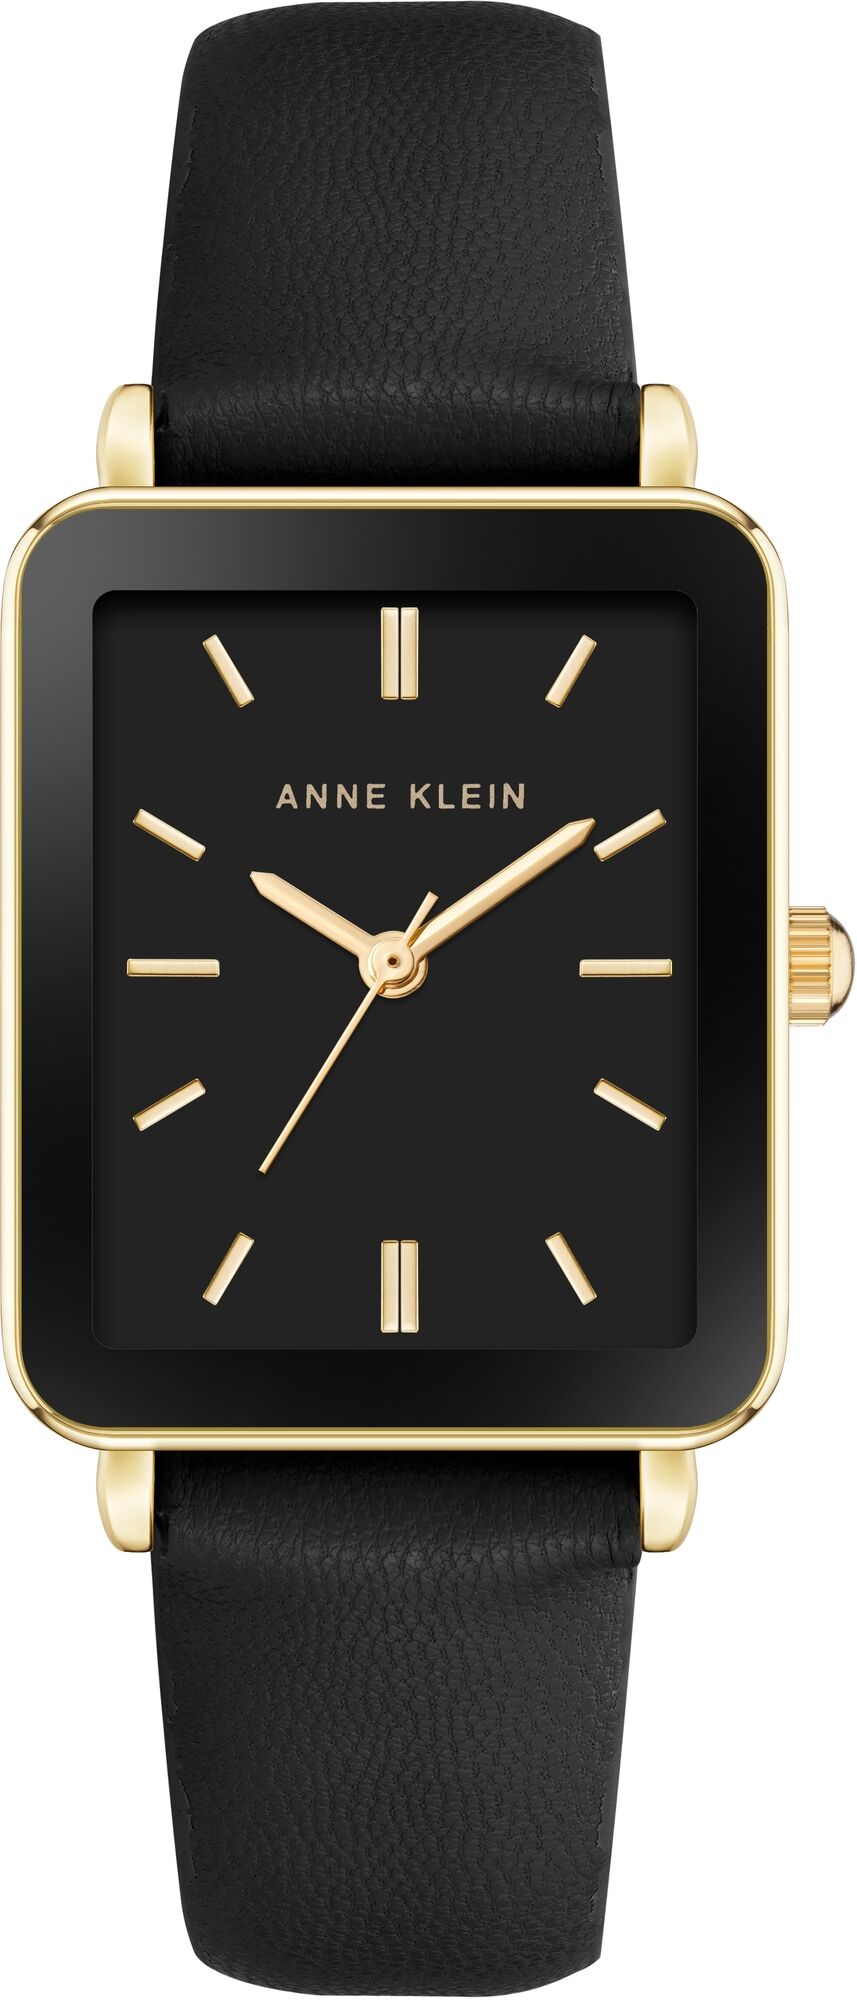 Женские наручные часы Anne Klein Rectangular Leather 3702BKBK